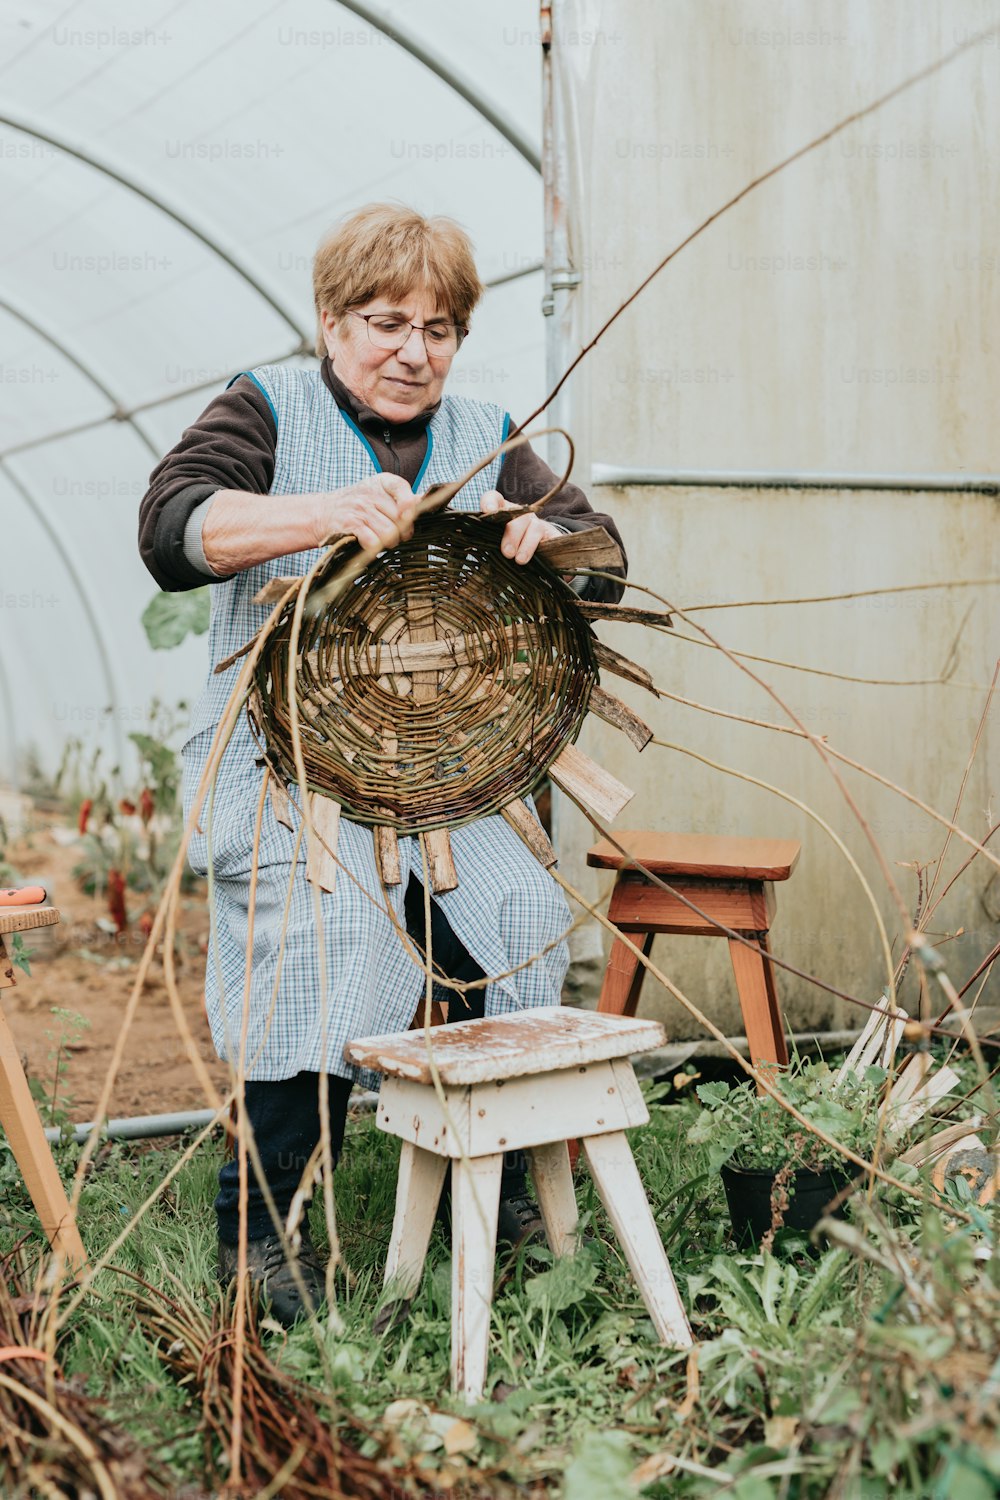 Une femme dans une serre travaillant sur un panier en osier